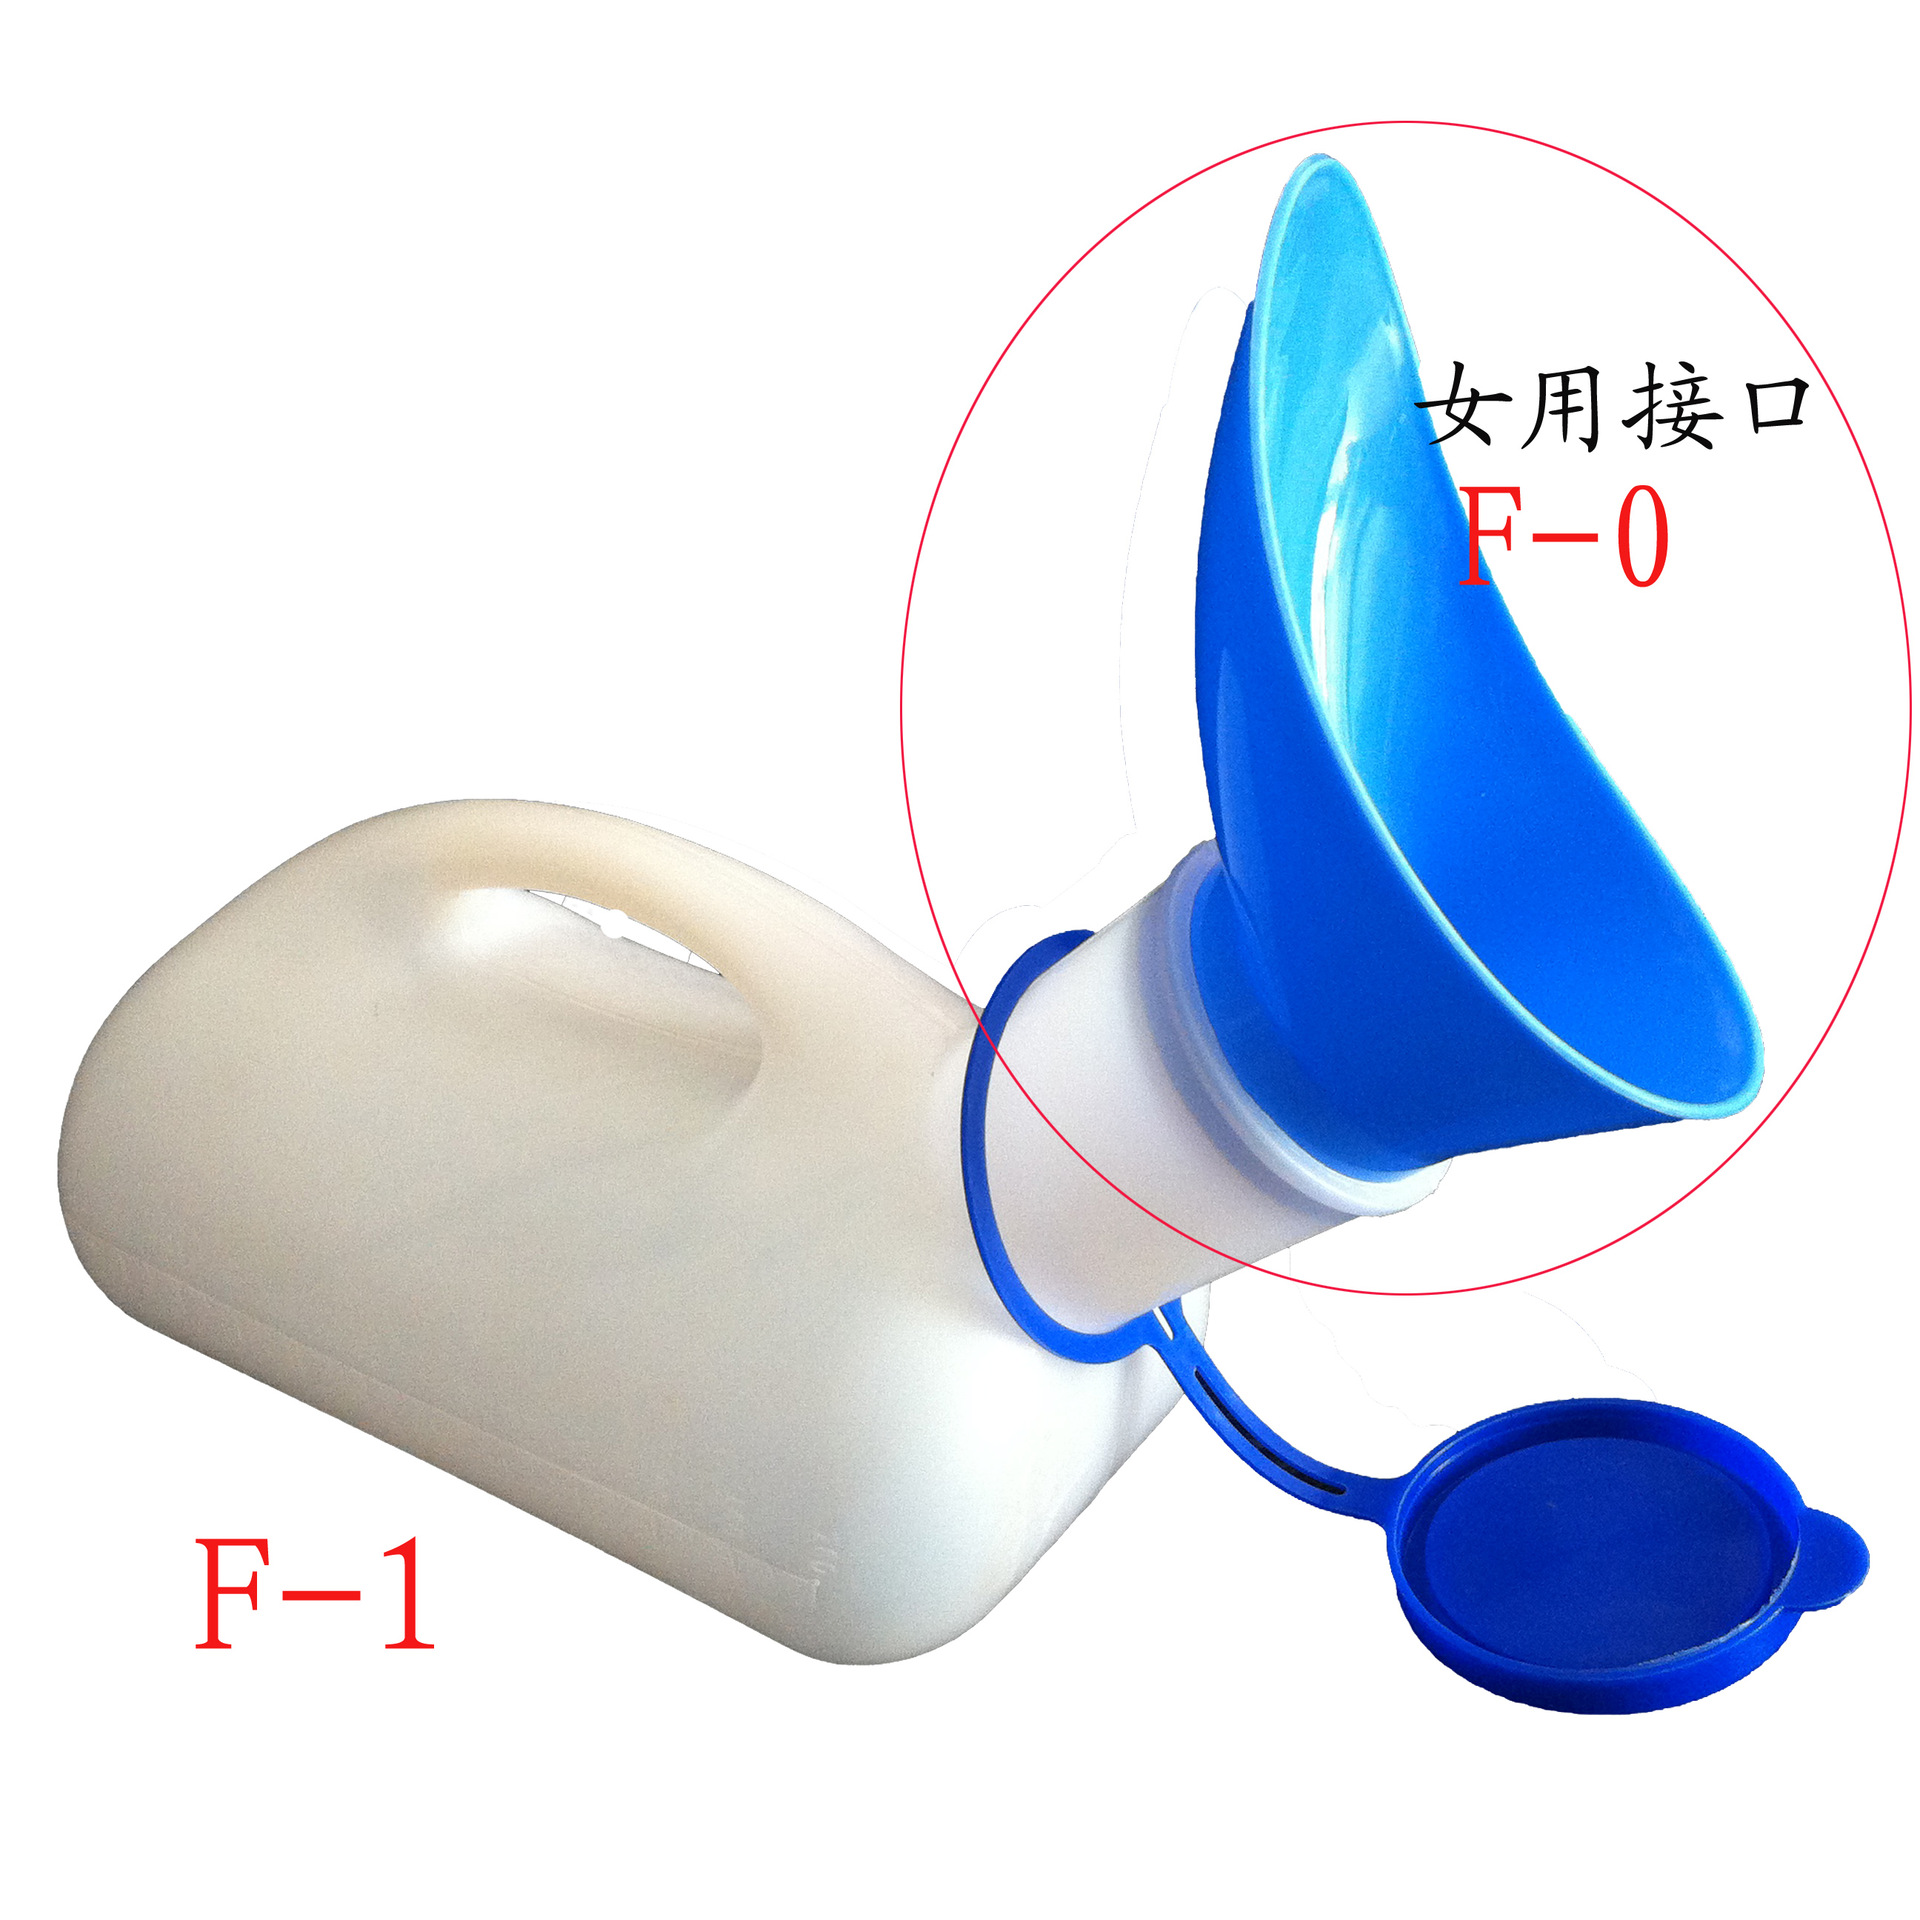 塑料瓶自制女士尿壶图片